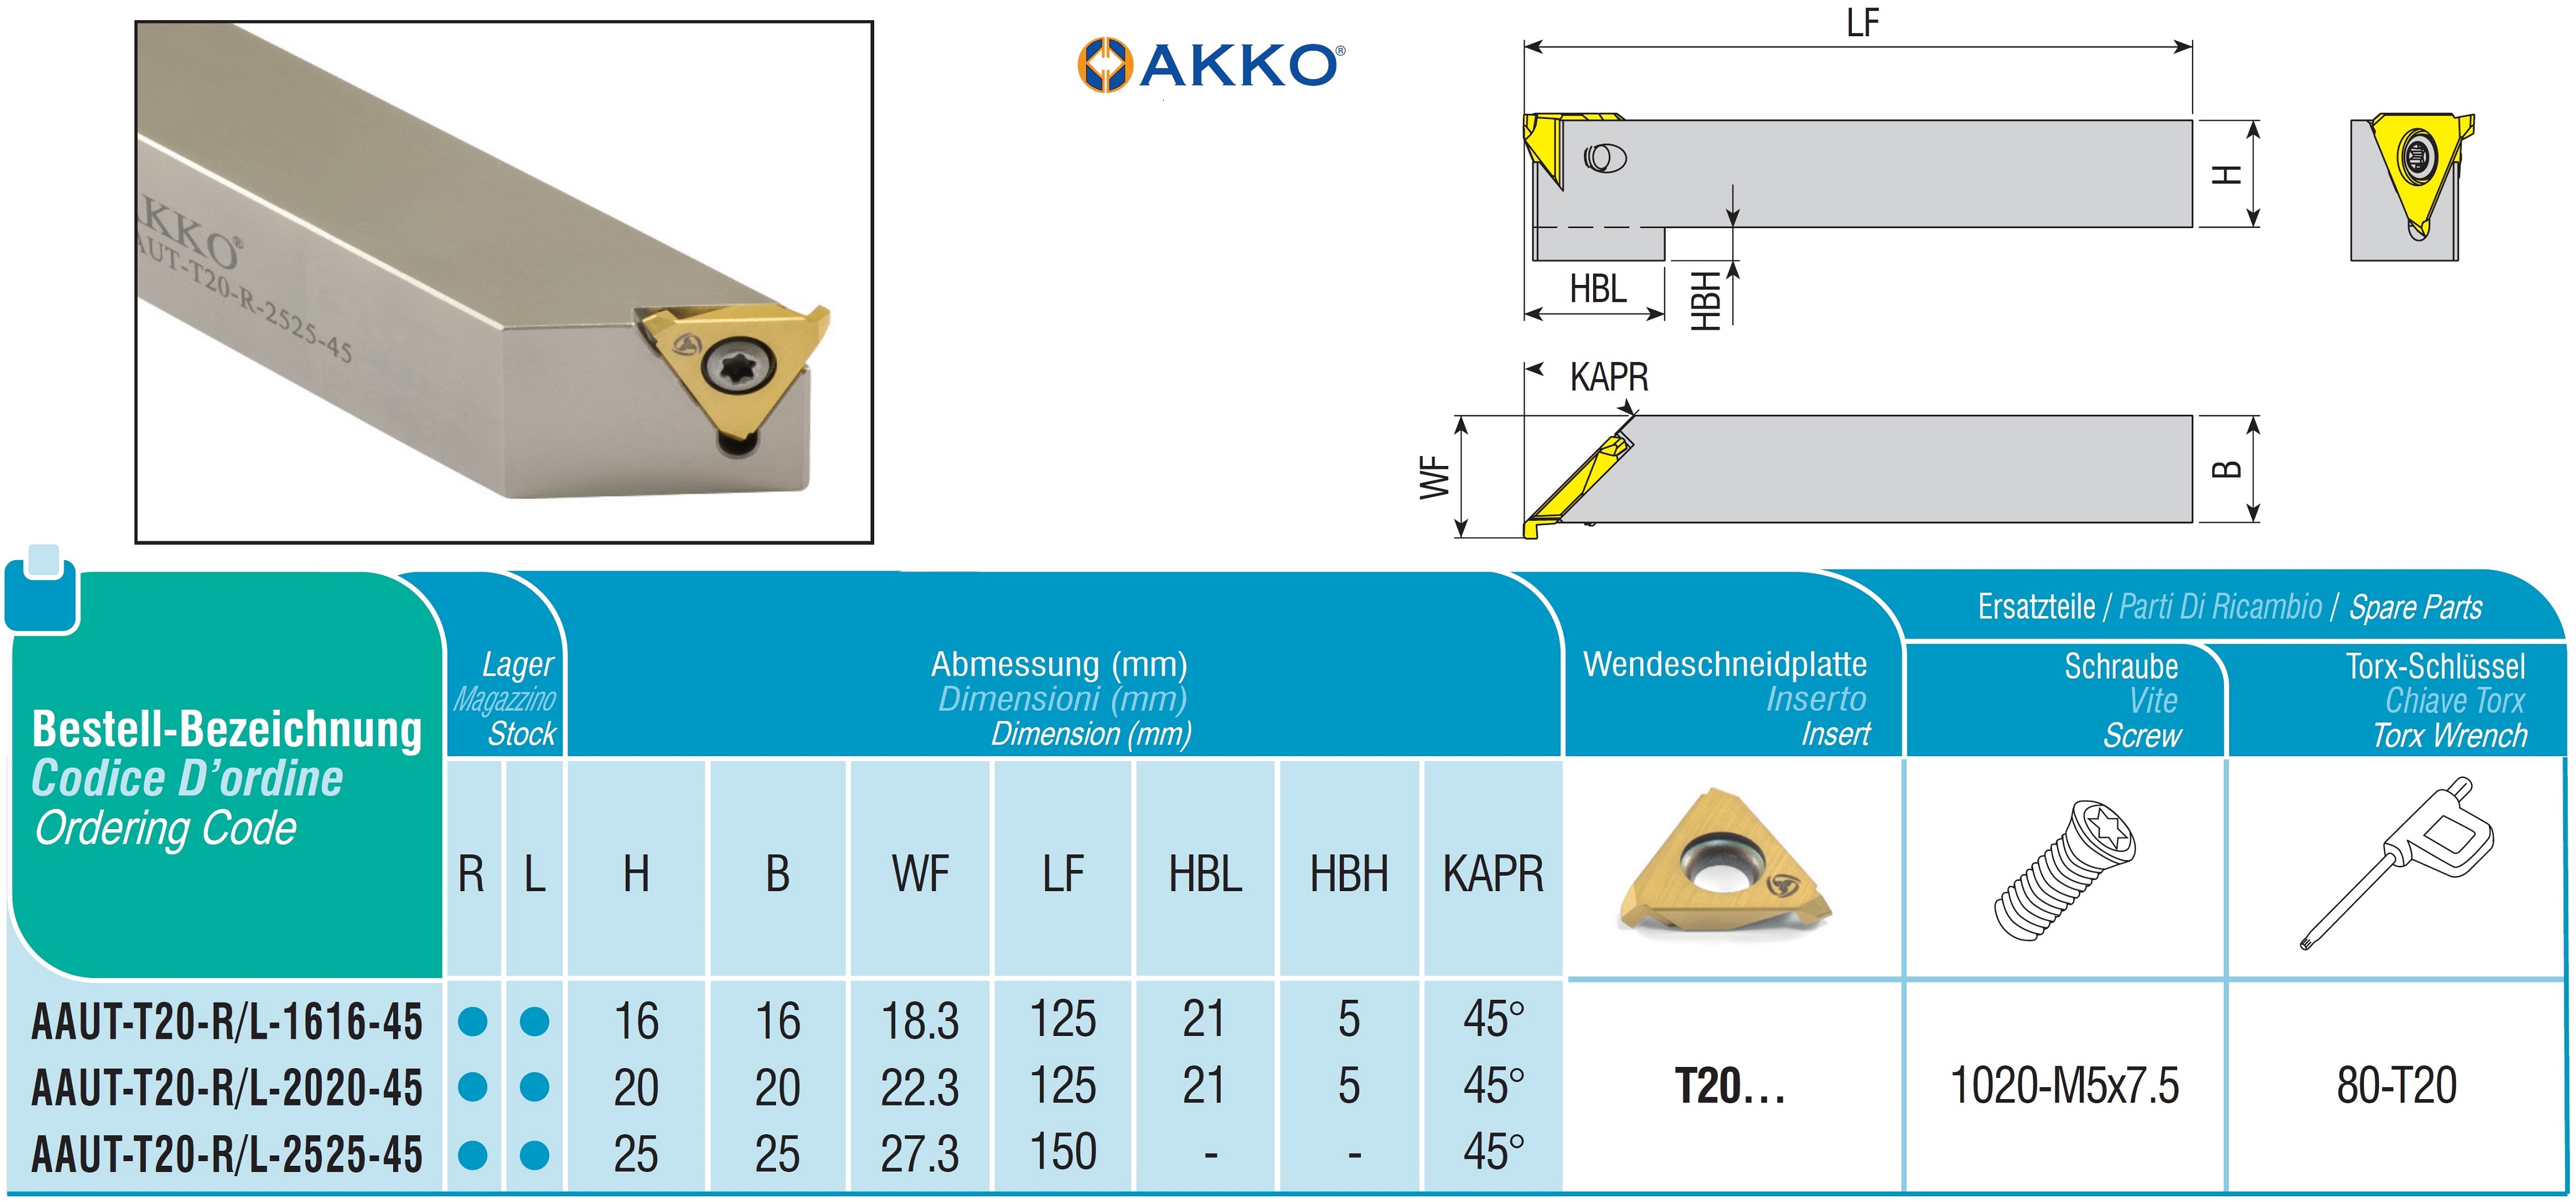 AKKO-Drehhalter für axiale Freistiche 25 mm x 25 mm, kompatibel mit AKKO-Wendeplatte T20… 
Ausführung links